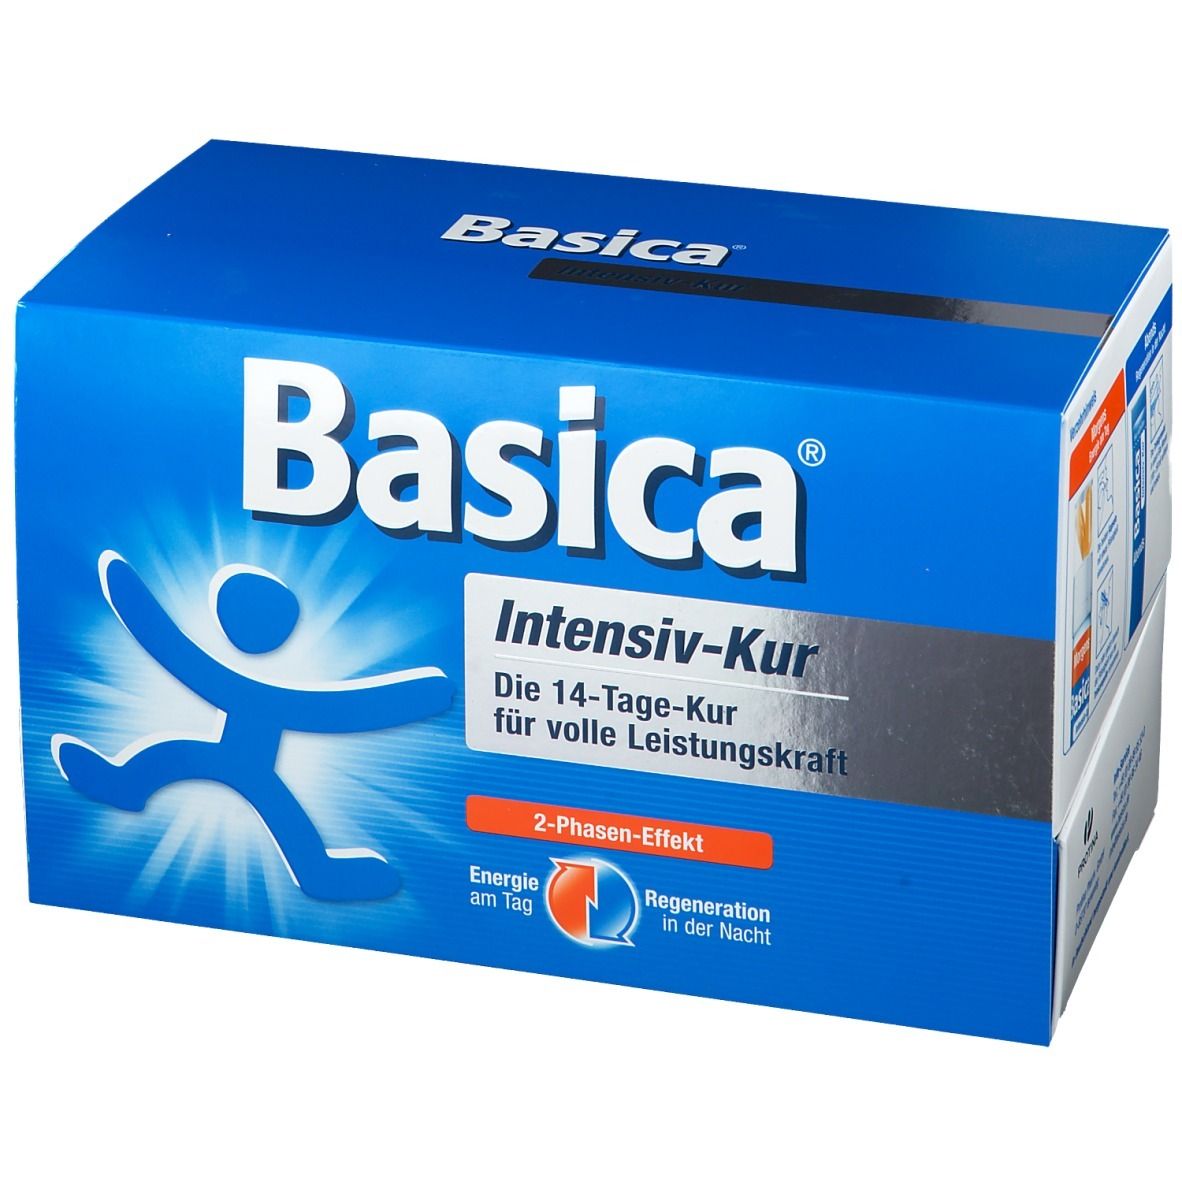 Basica® Intensiv-Kur